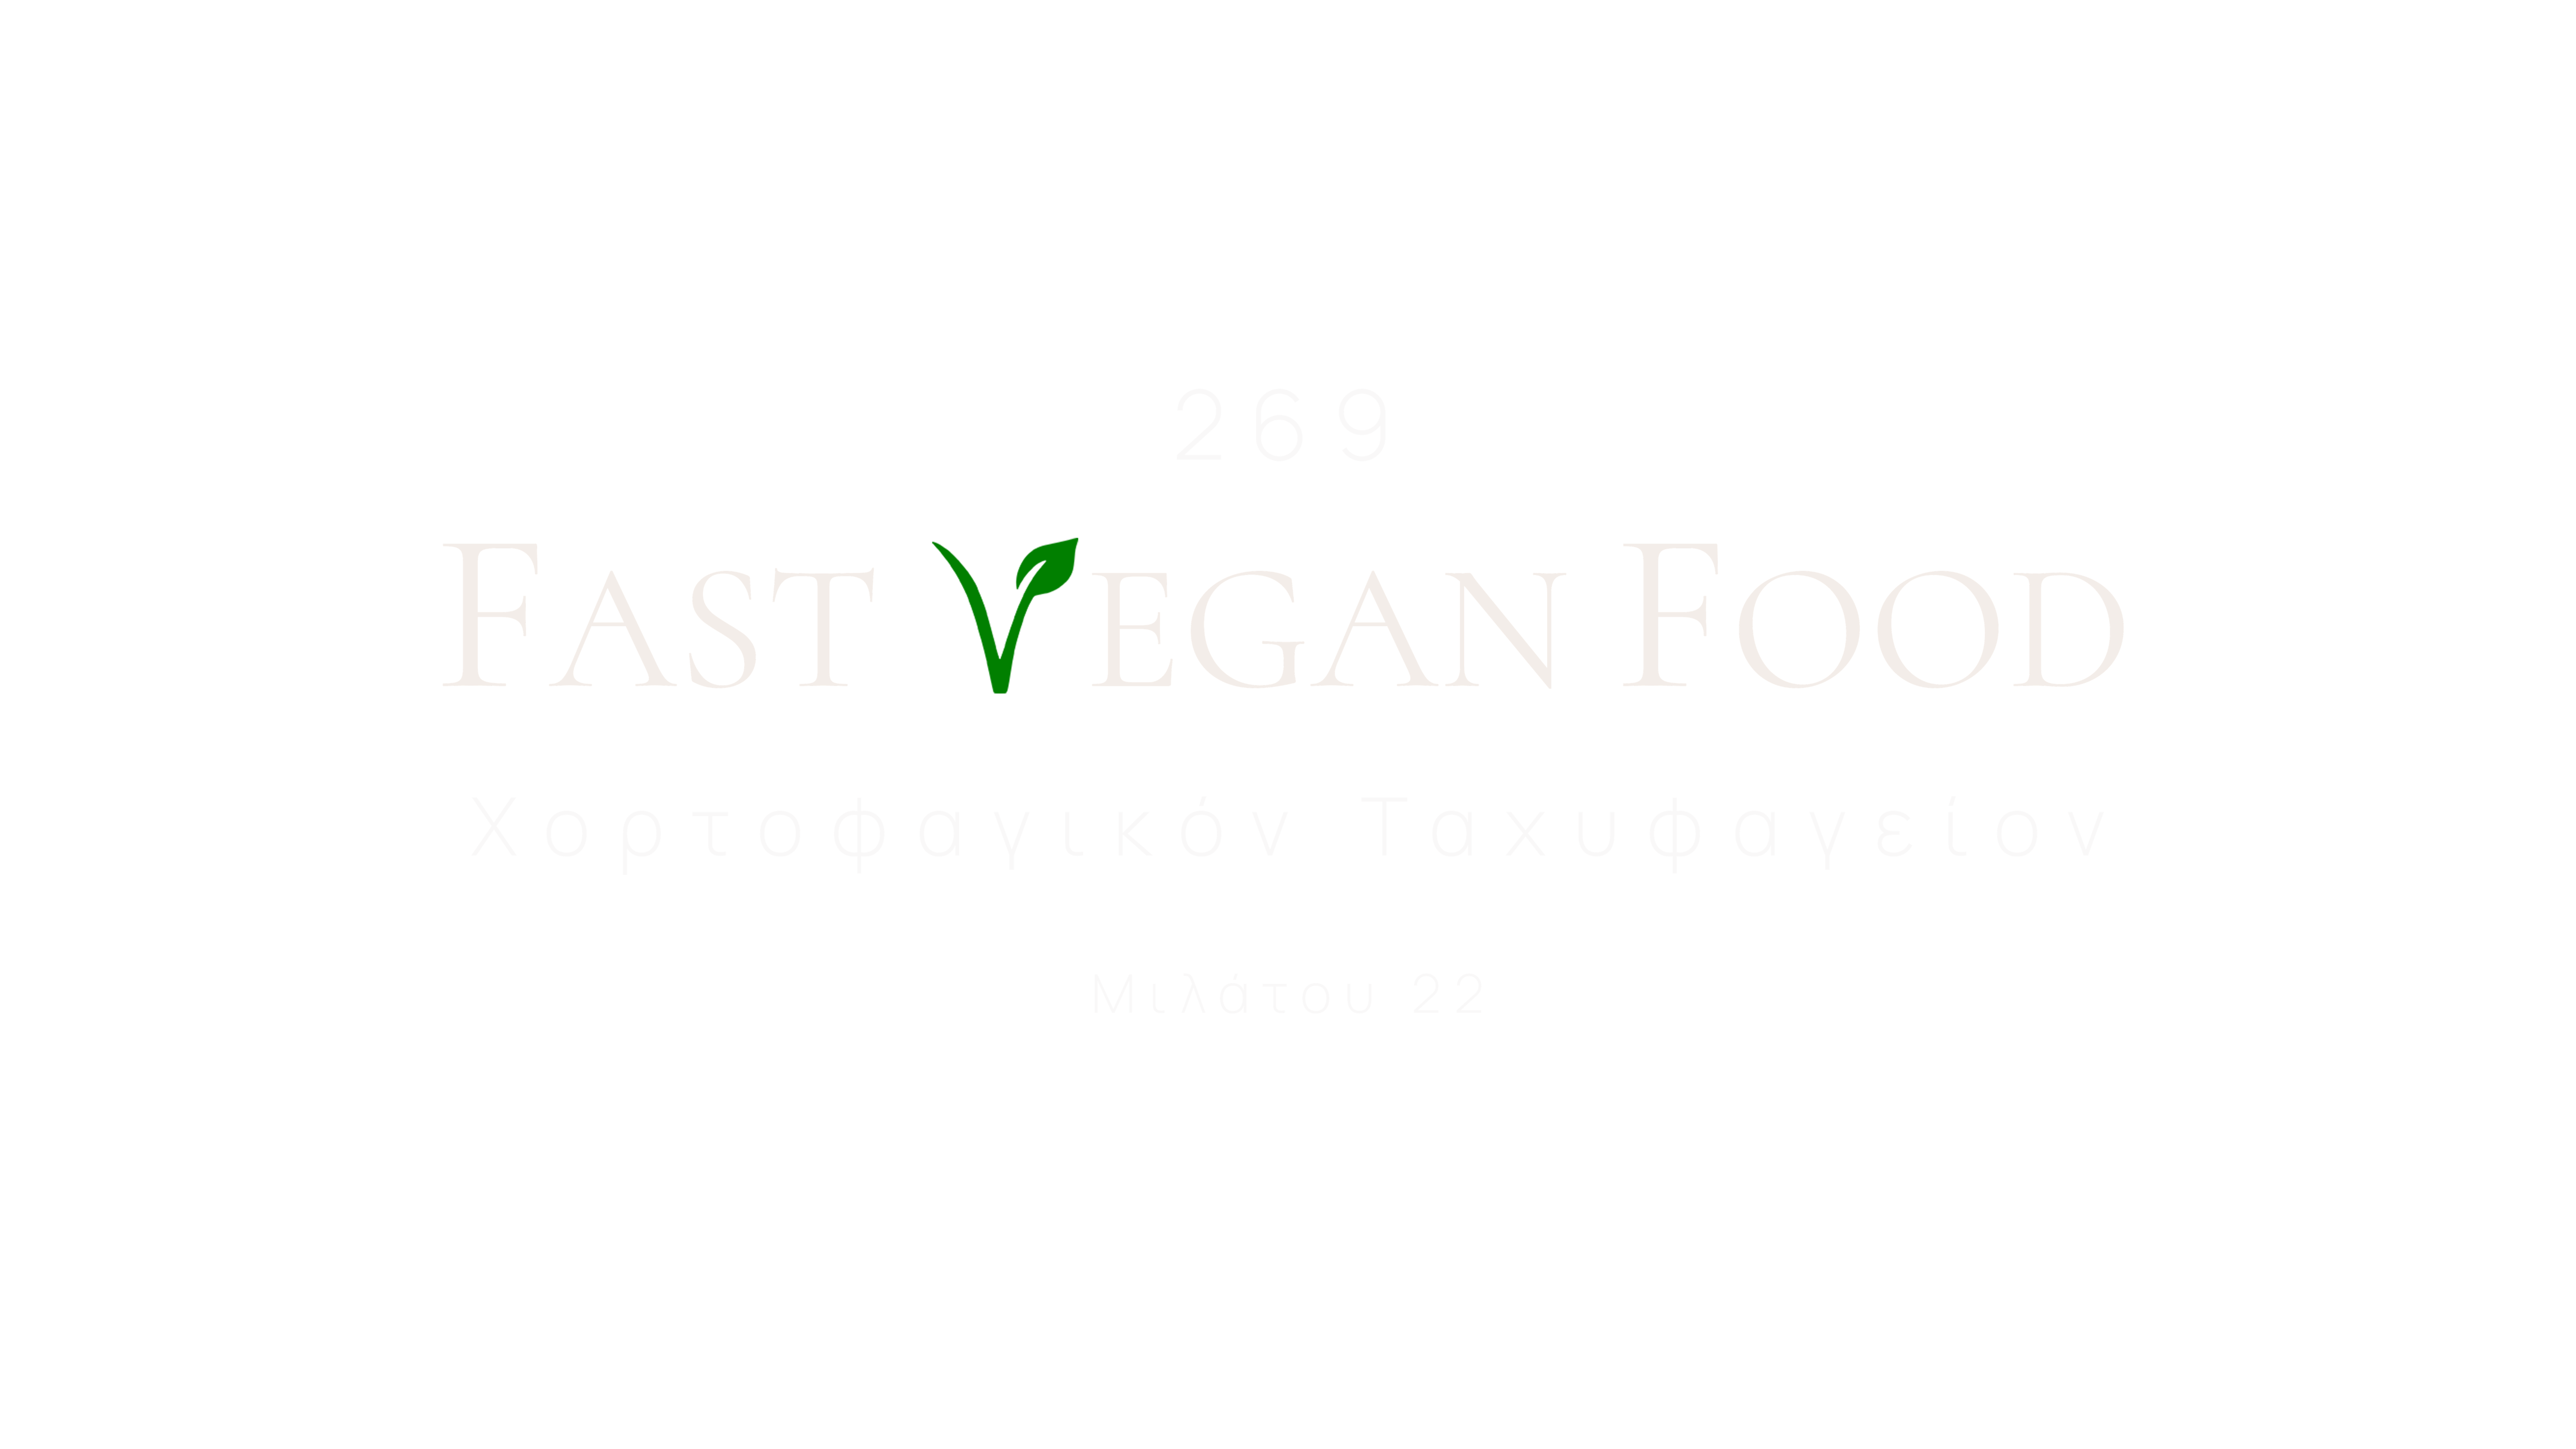 Fast Vegan Food